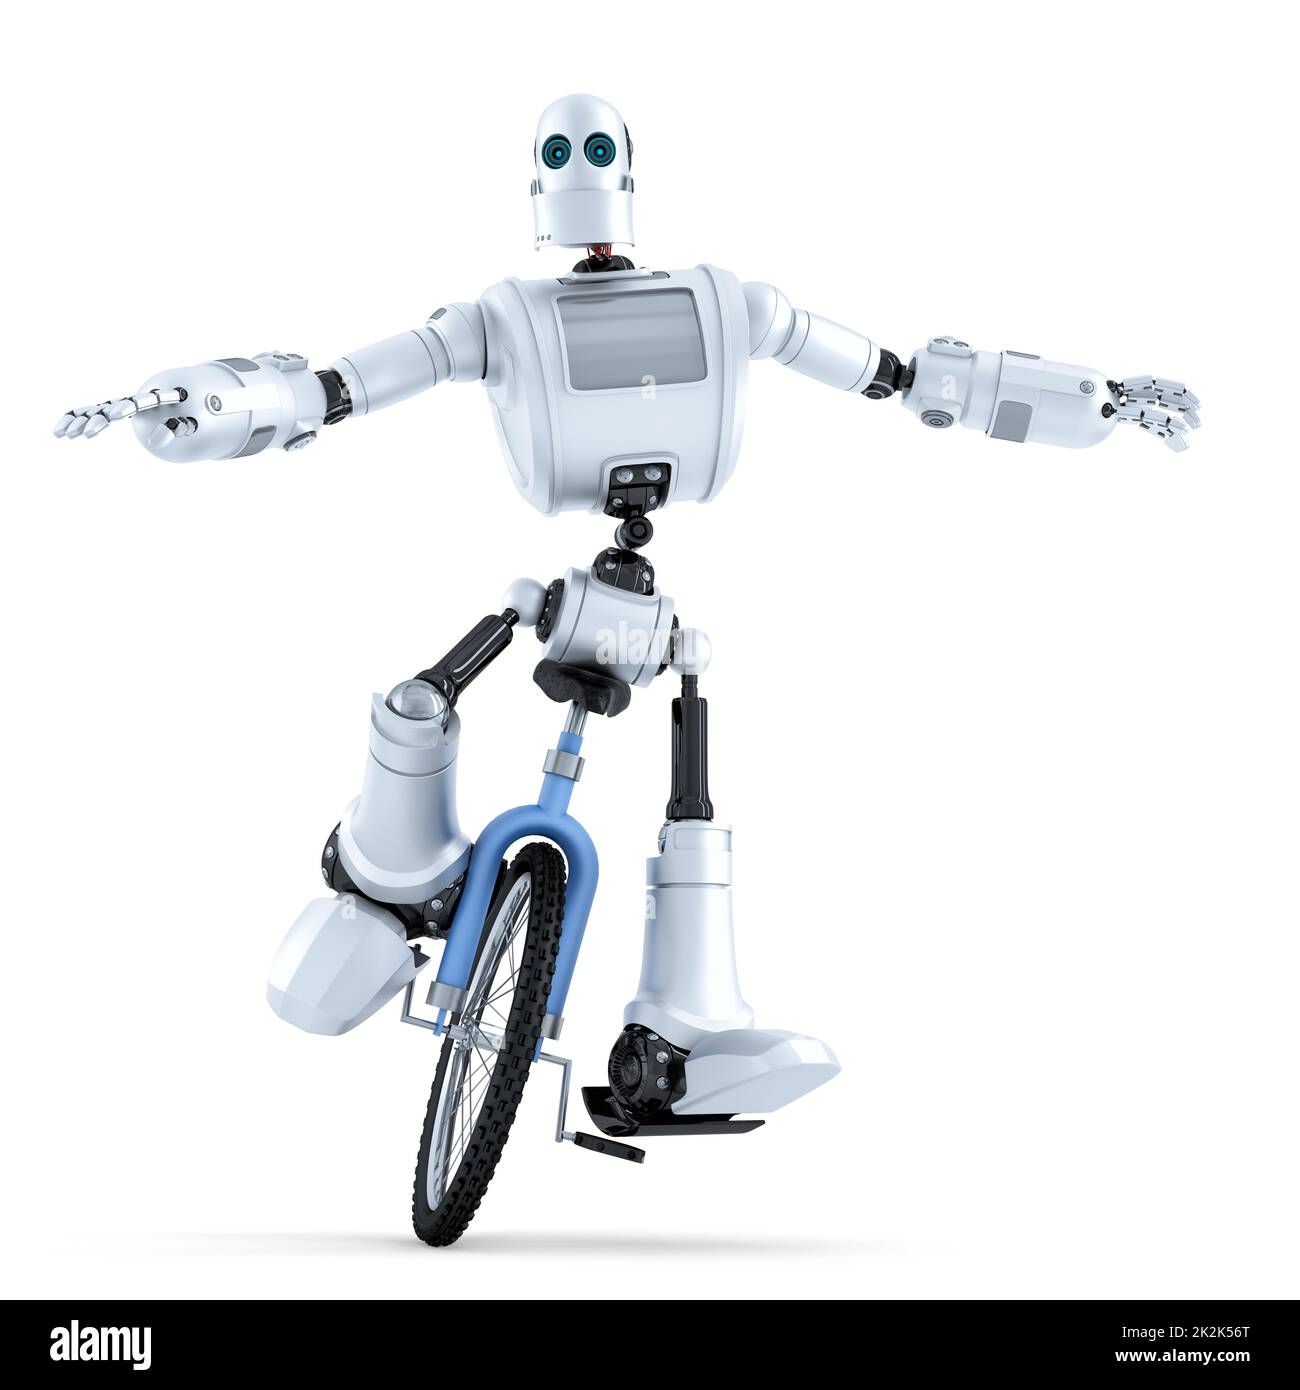 Robot monociclo de equitación. Concepto de tecnología. Aislado sobre blanco. Contiene trazado de recorte Foto de stock